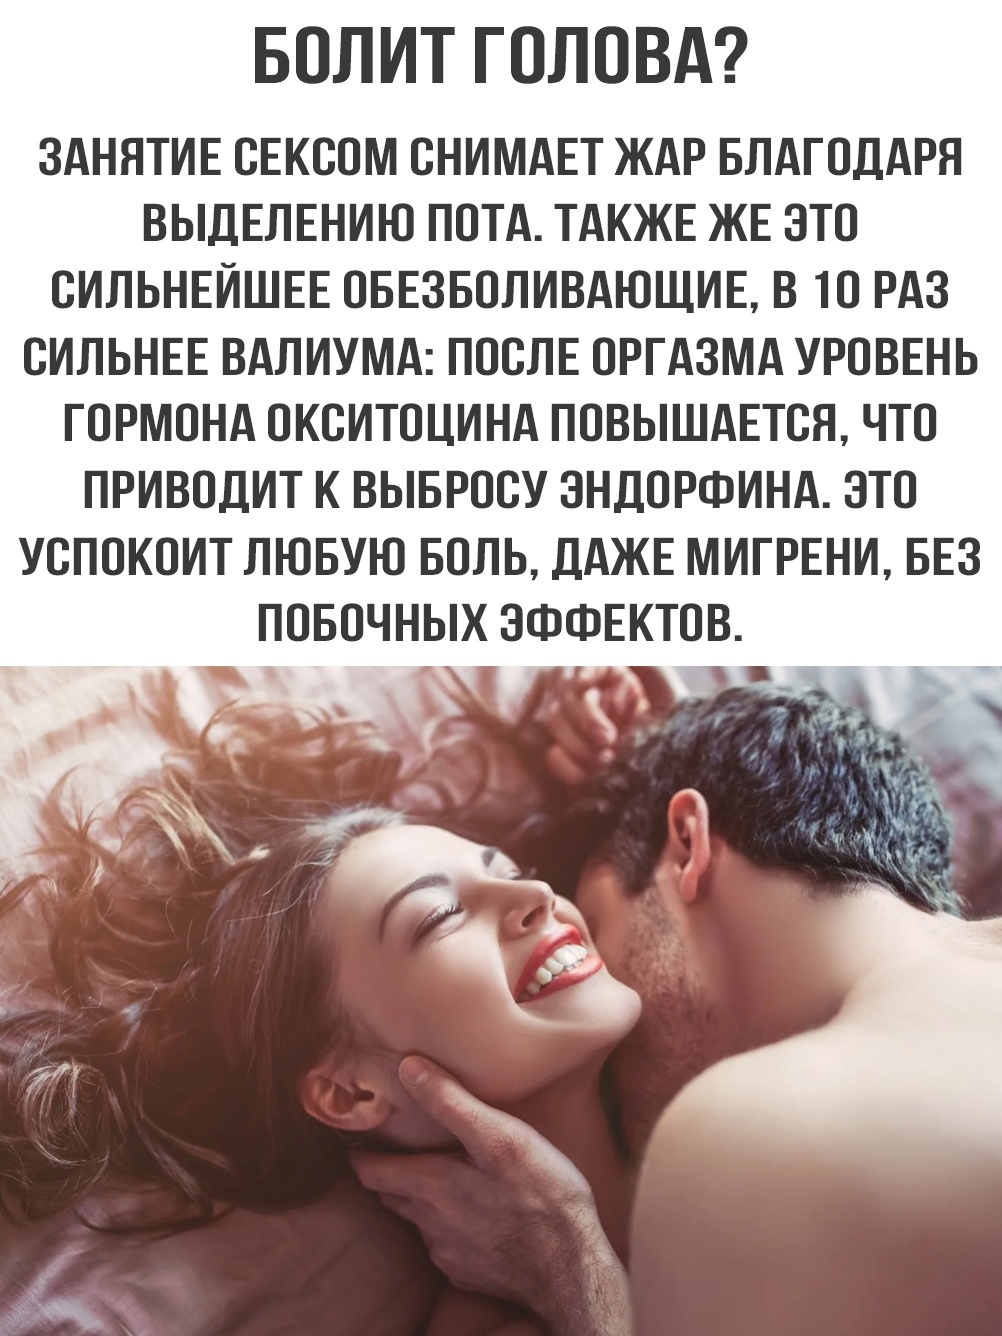 Смешные любовные и секс истории (возможны маты!) - Humor - lavandasport.ru - Крупнейший форум Бурятии